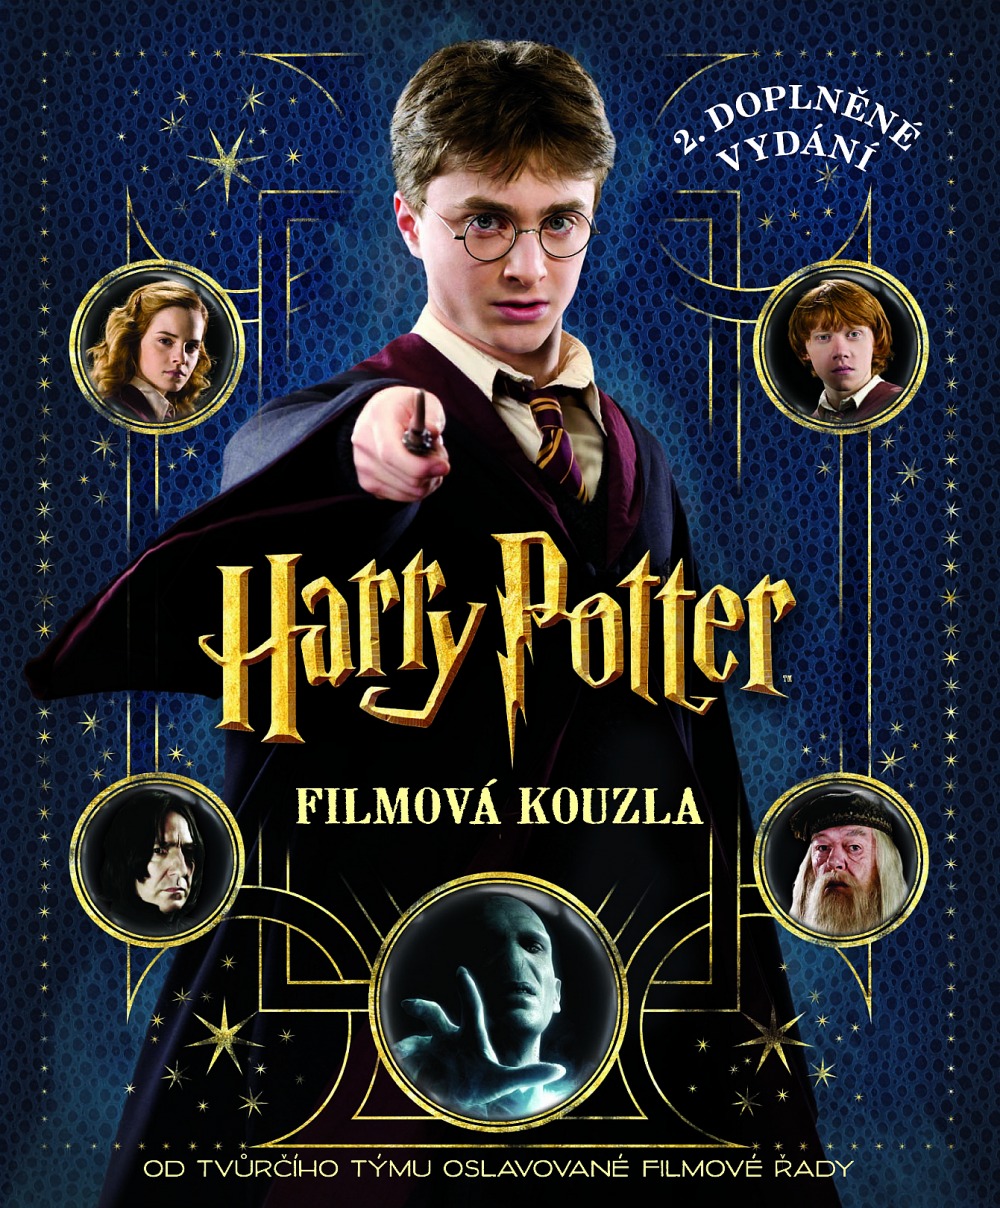 Harry Potter: Filmová kouzla (druhé, doplněné vydání)